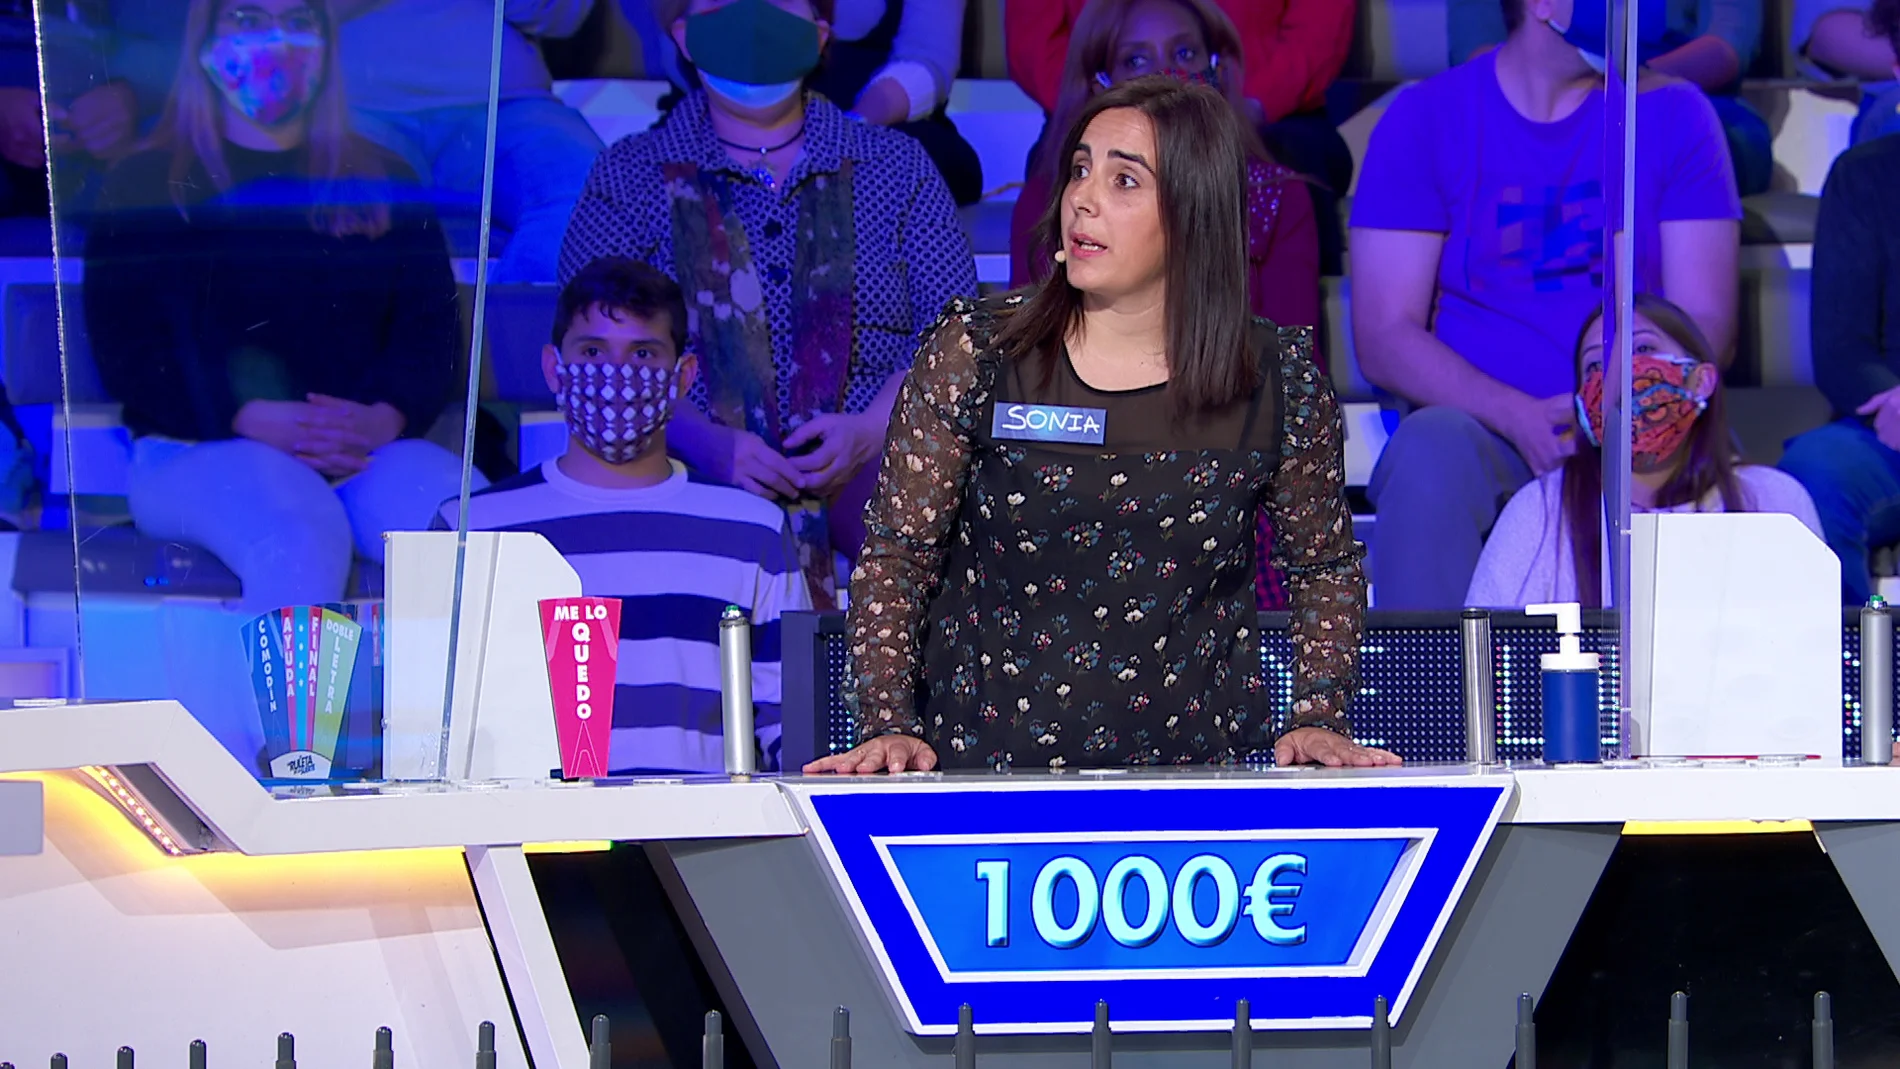 ¡Sonia recupera en el último momento y consigue sumar 1000 euros a su marcador!